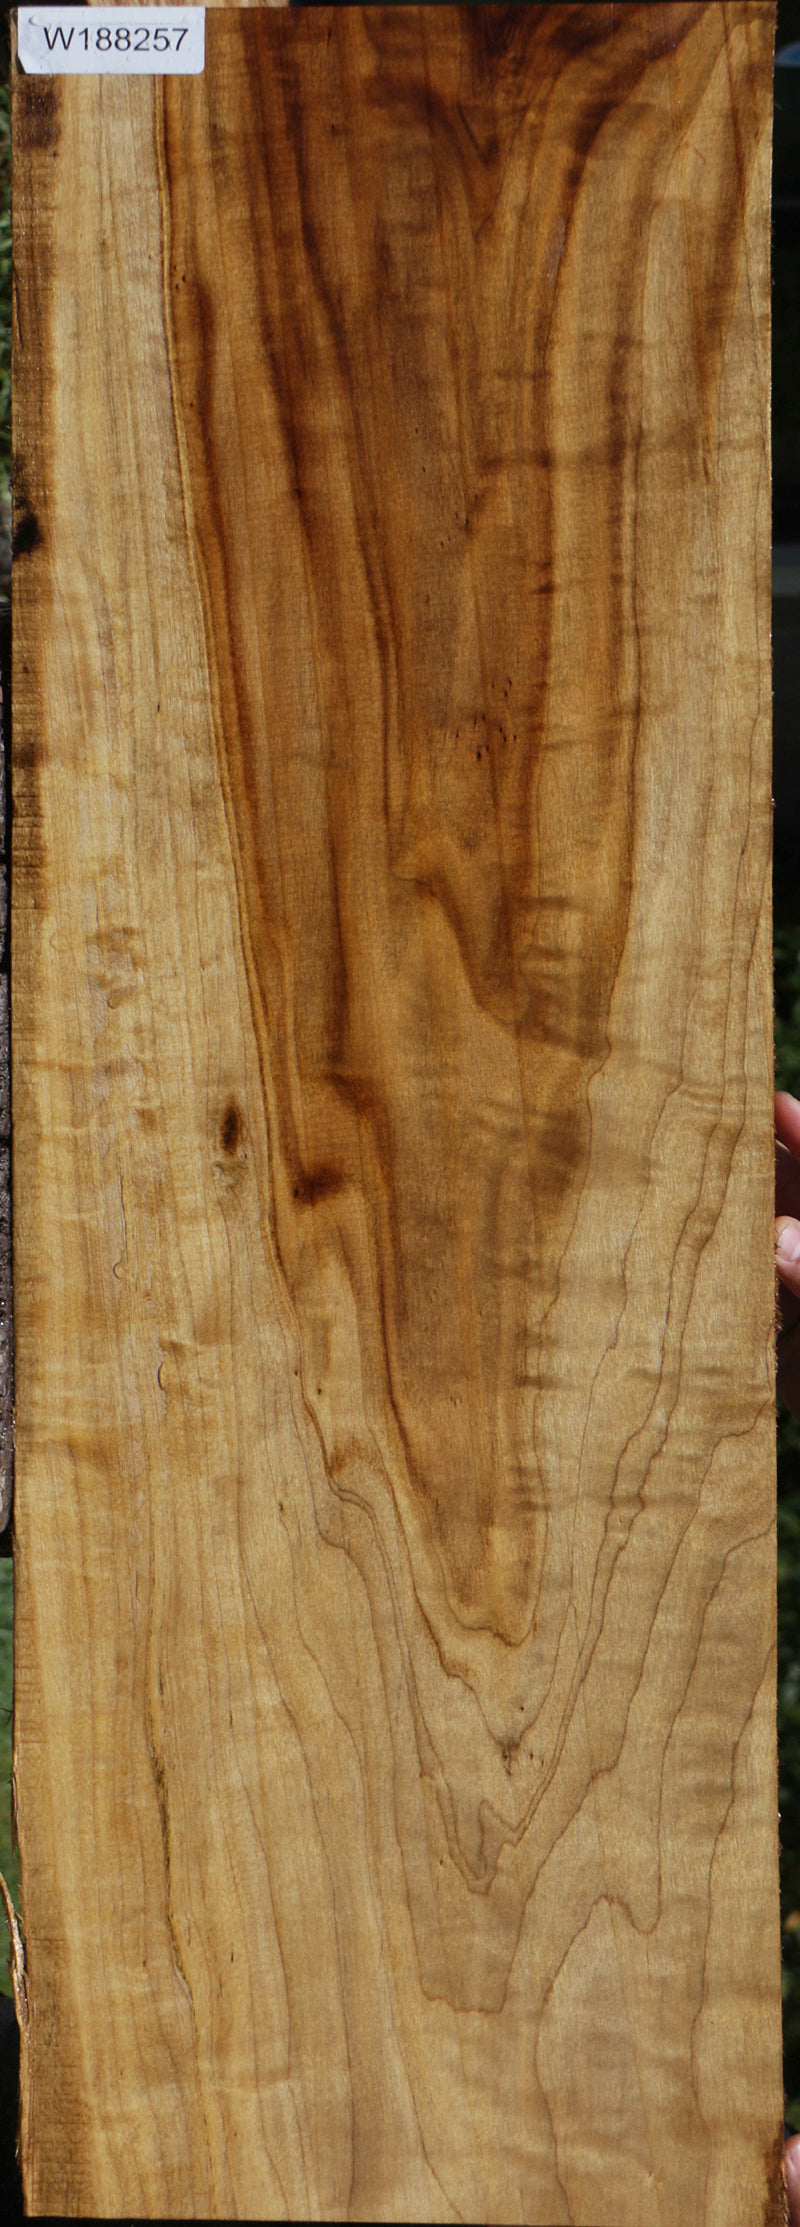 Fiddleback French Poplar Lumber